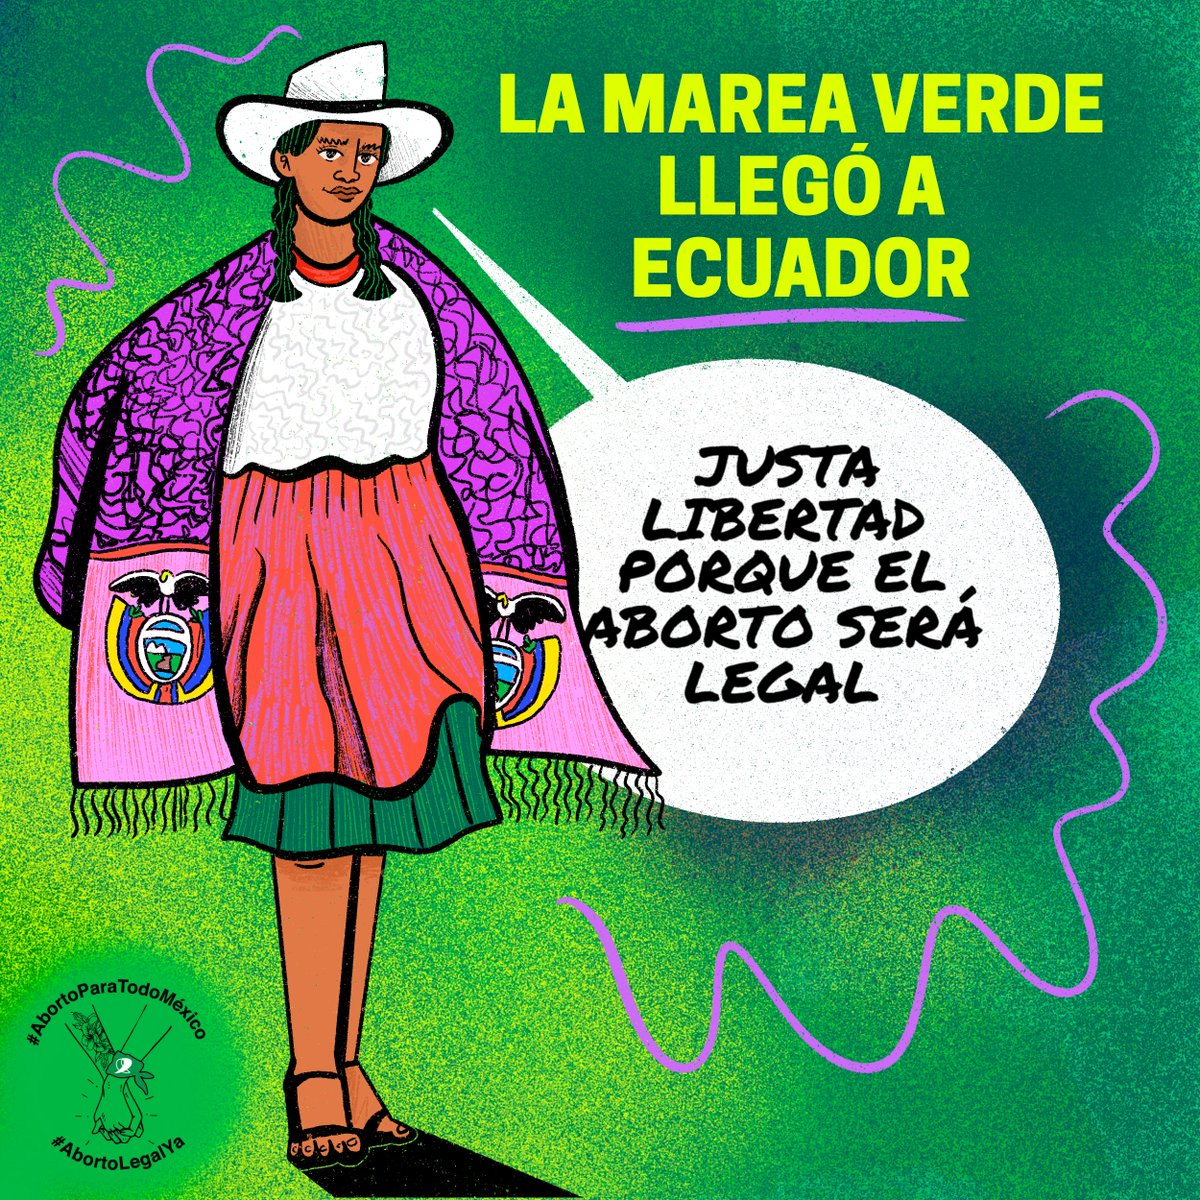 La marea verde no tiene límites: el aborto será legal en Ecuador 💚✊🏽🌊 En México ondeamos nuestros pañuelos verdes por la @Justalibertadec #JustaLibertad #QueSubaLaMarea